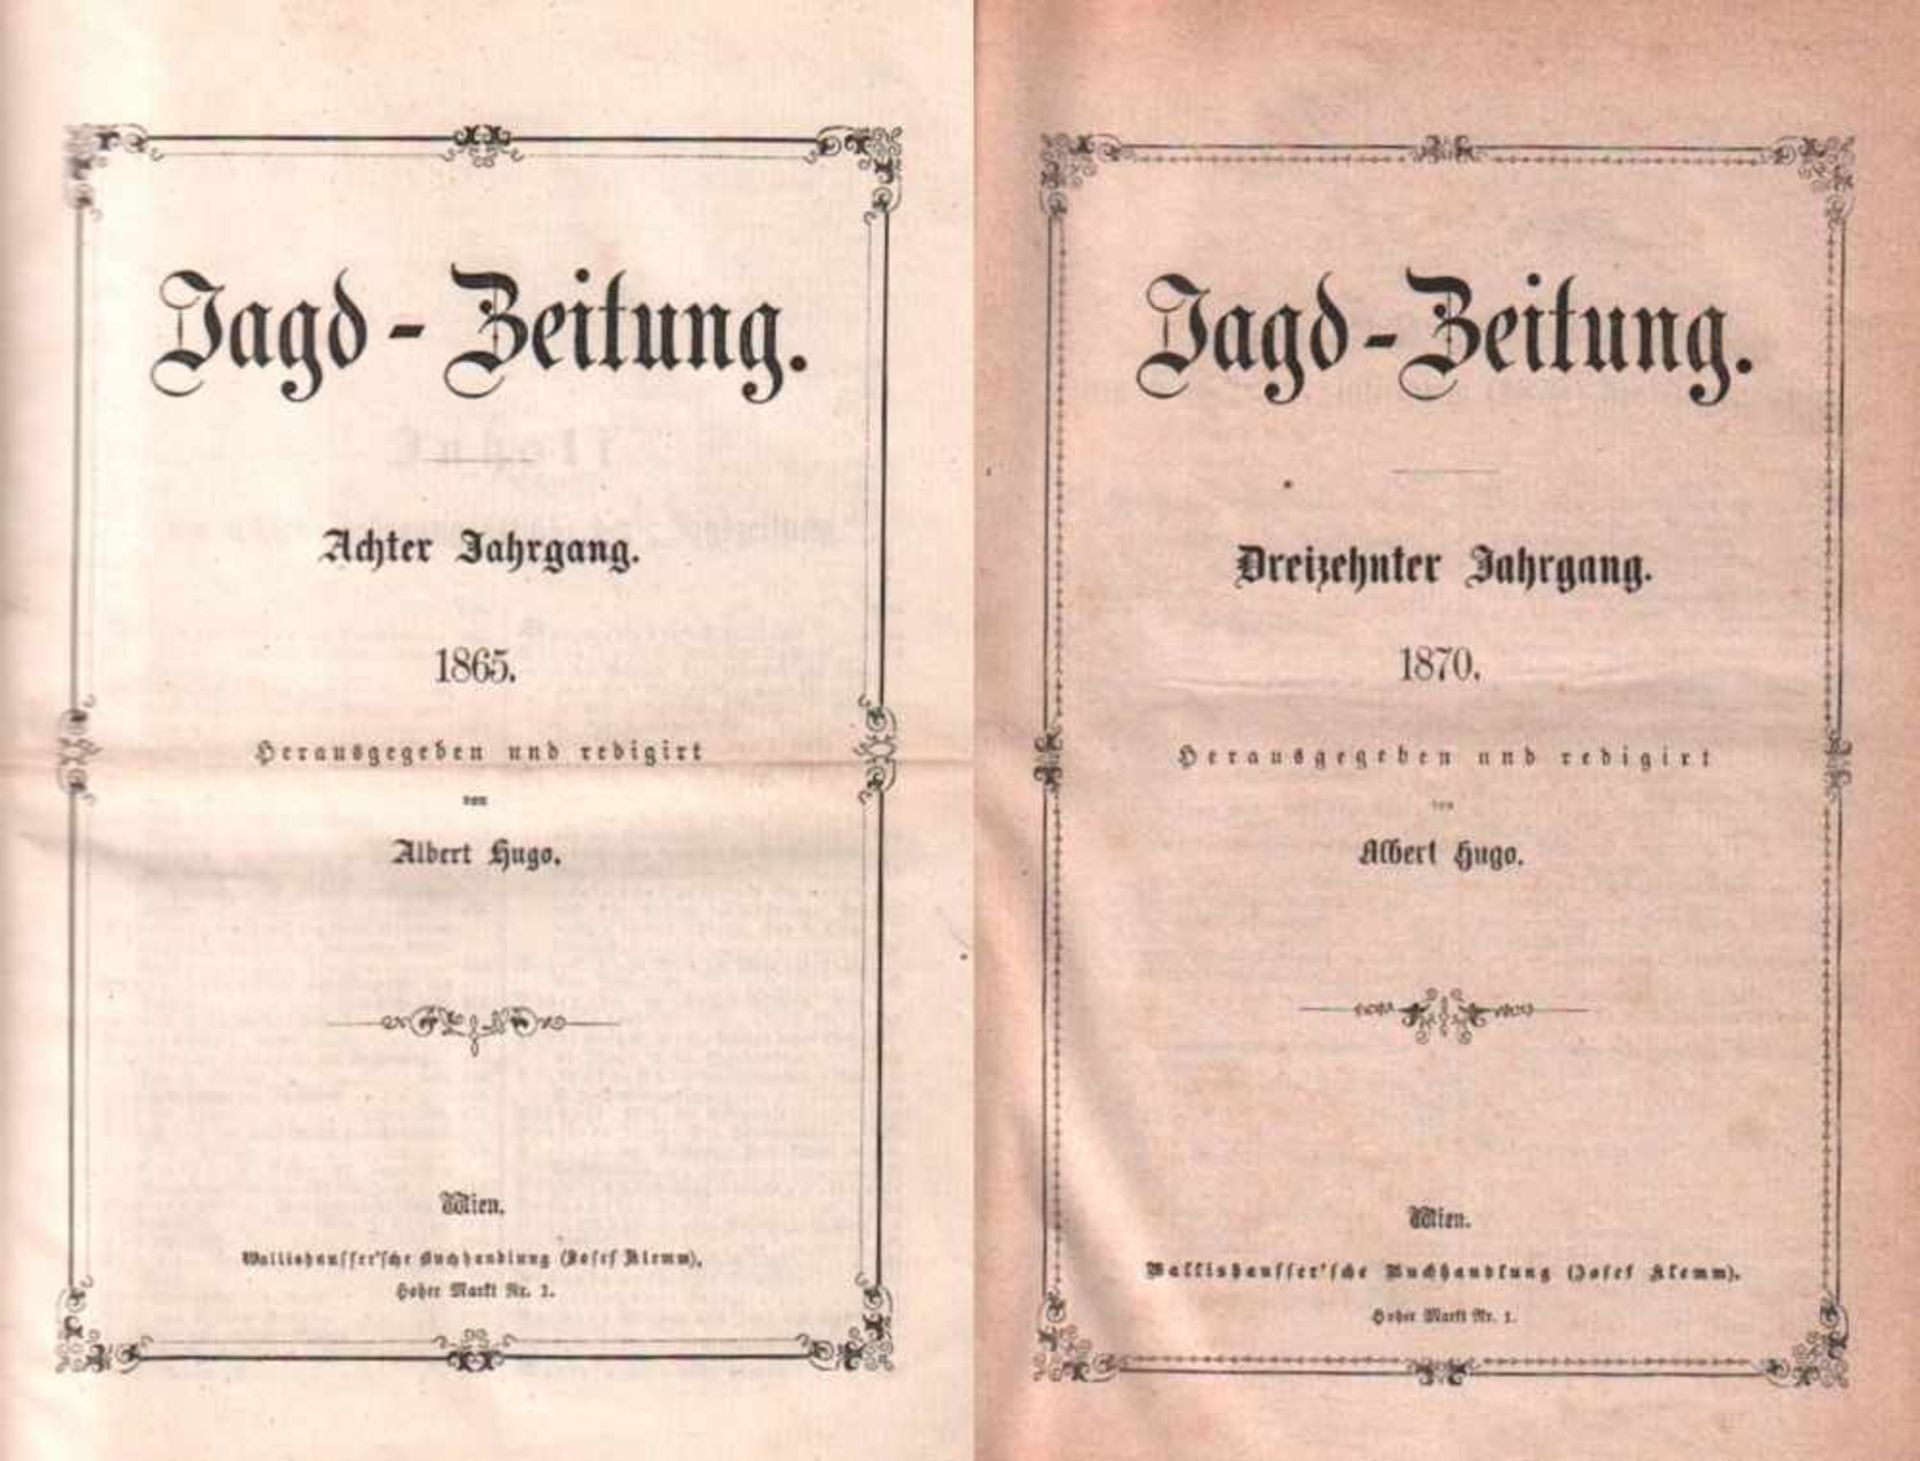 Jagd - Zeitung.Hrsg. und redigiert von Albert Hugo. Wien, Wallishausser. 8°. 8. Jahrg. 1865 - 13.